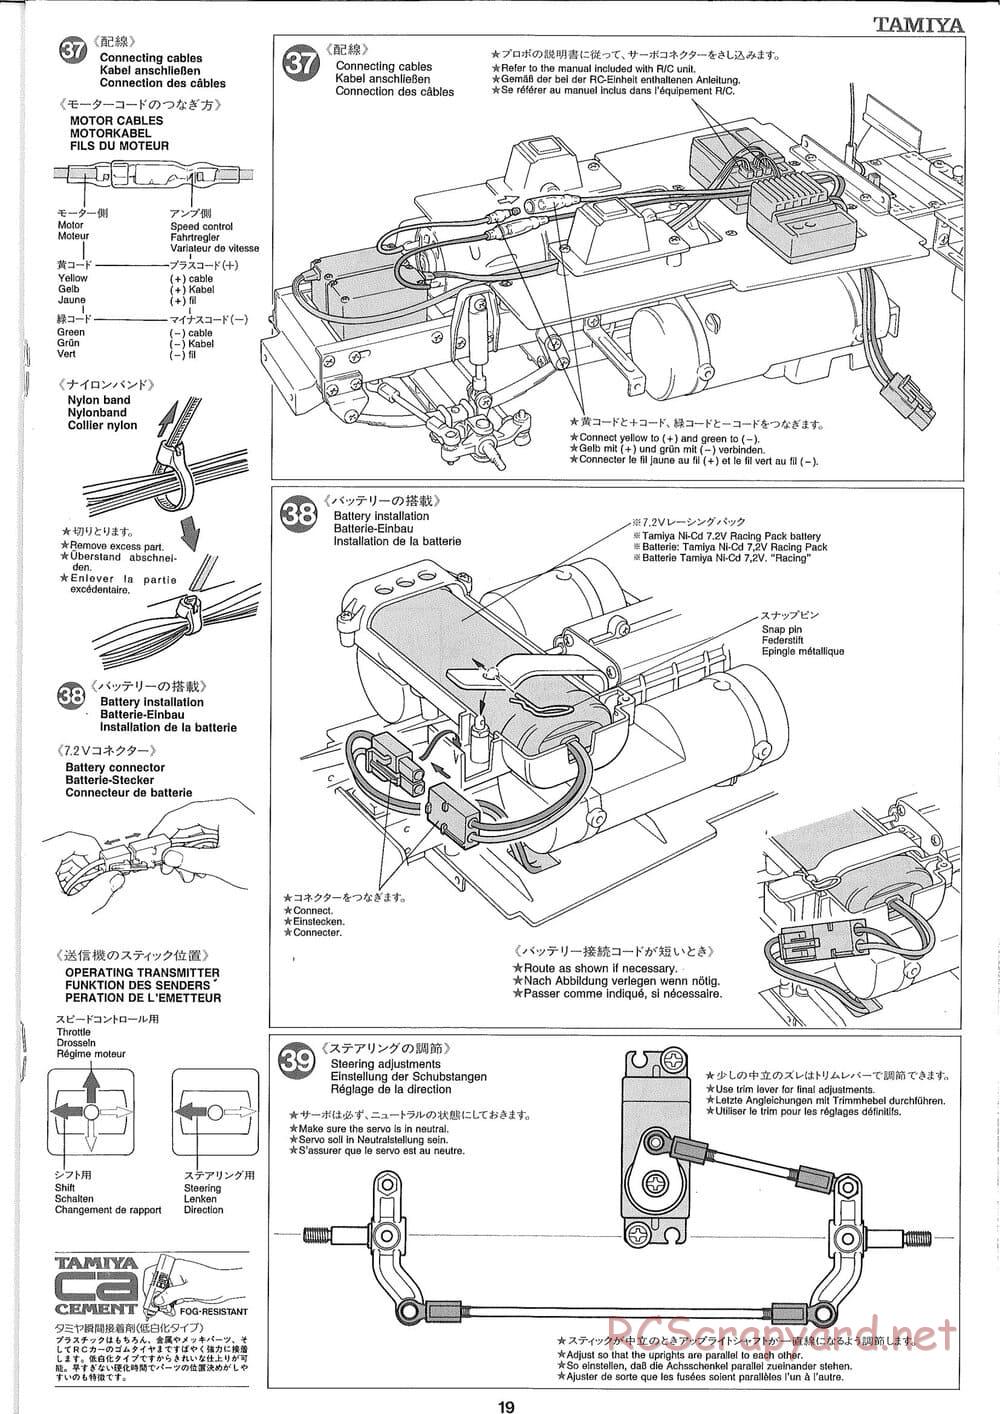 Tamiya - Ford Aeromax - Manual - Page 19